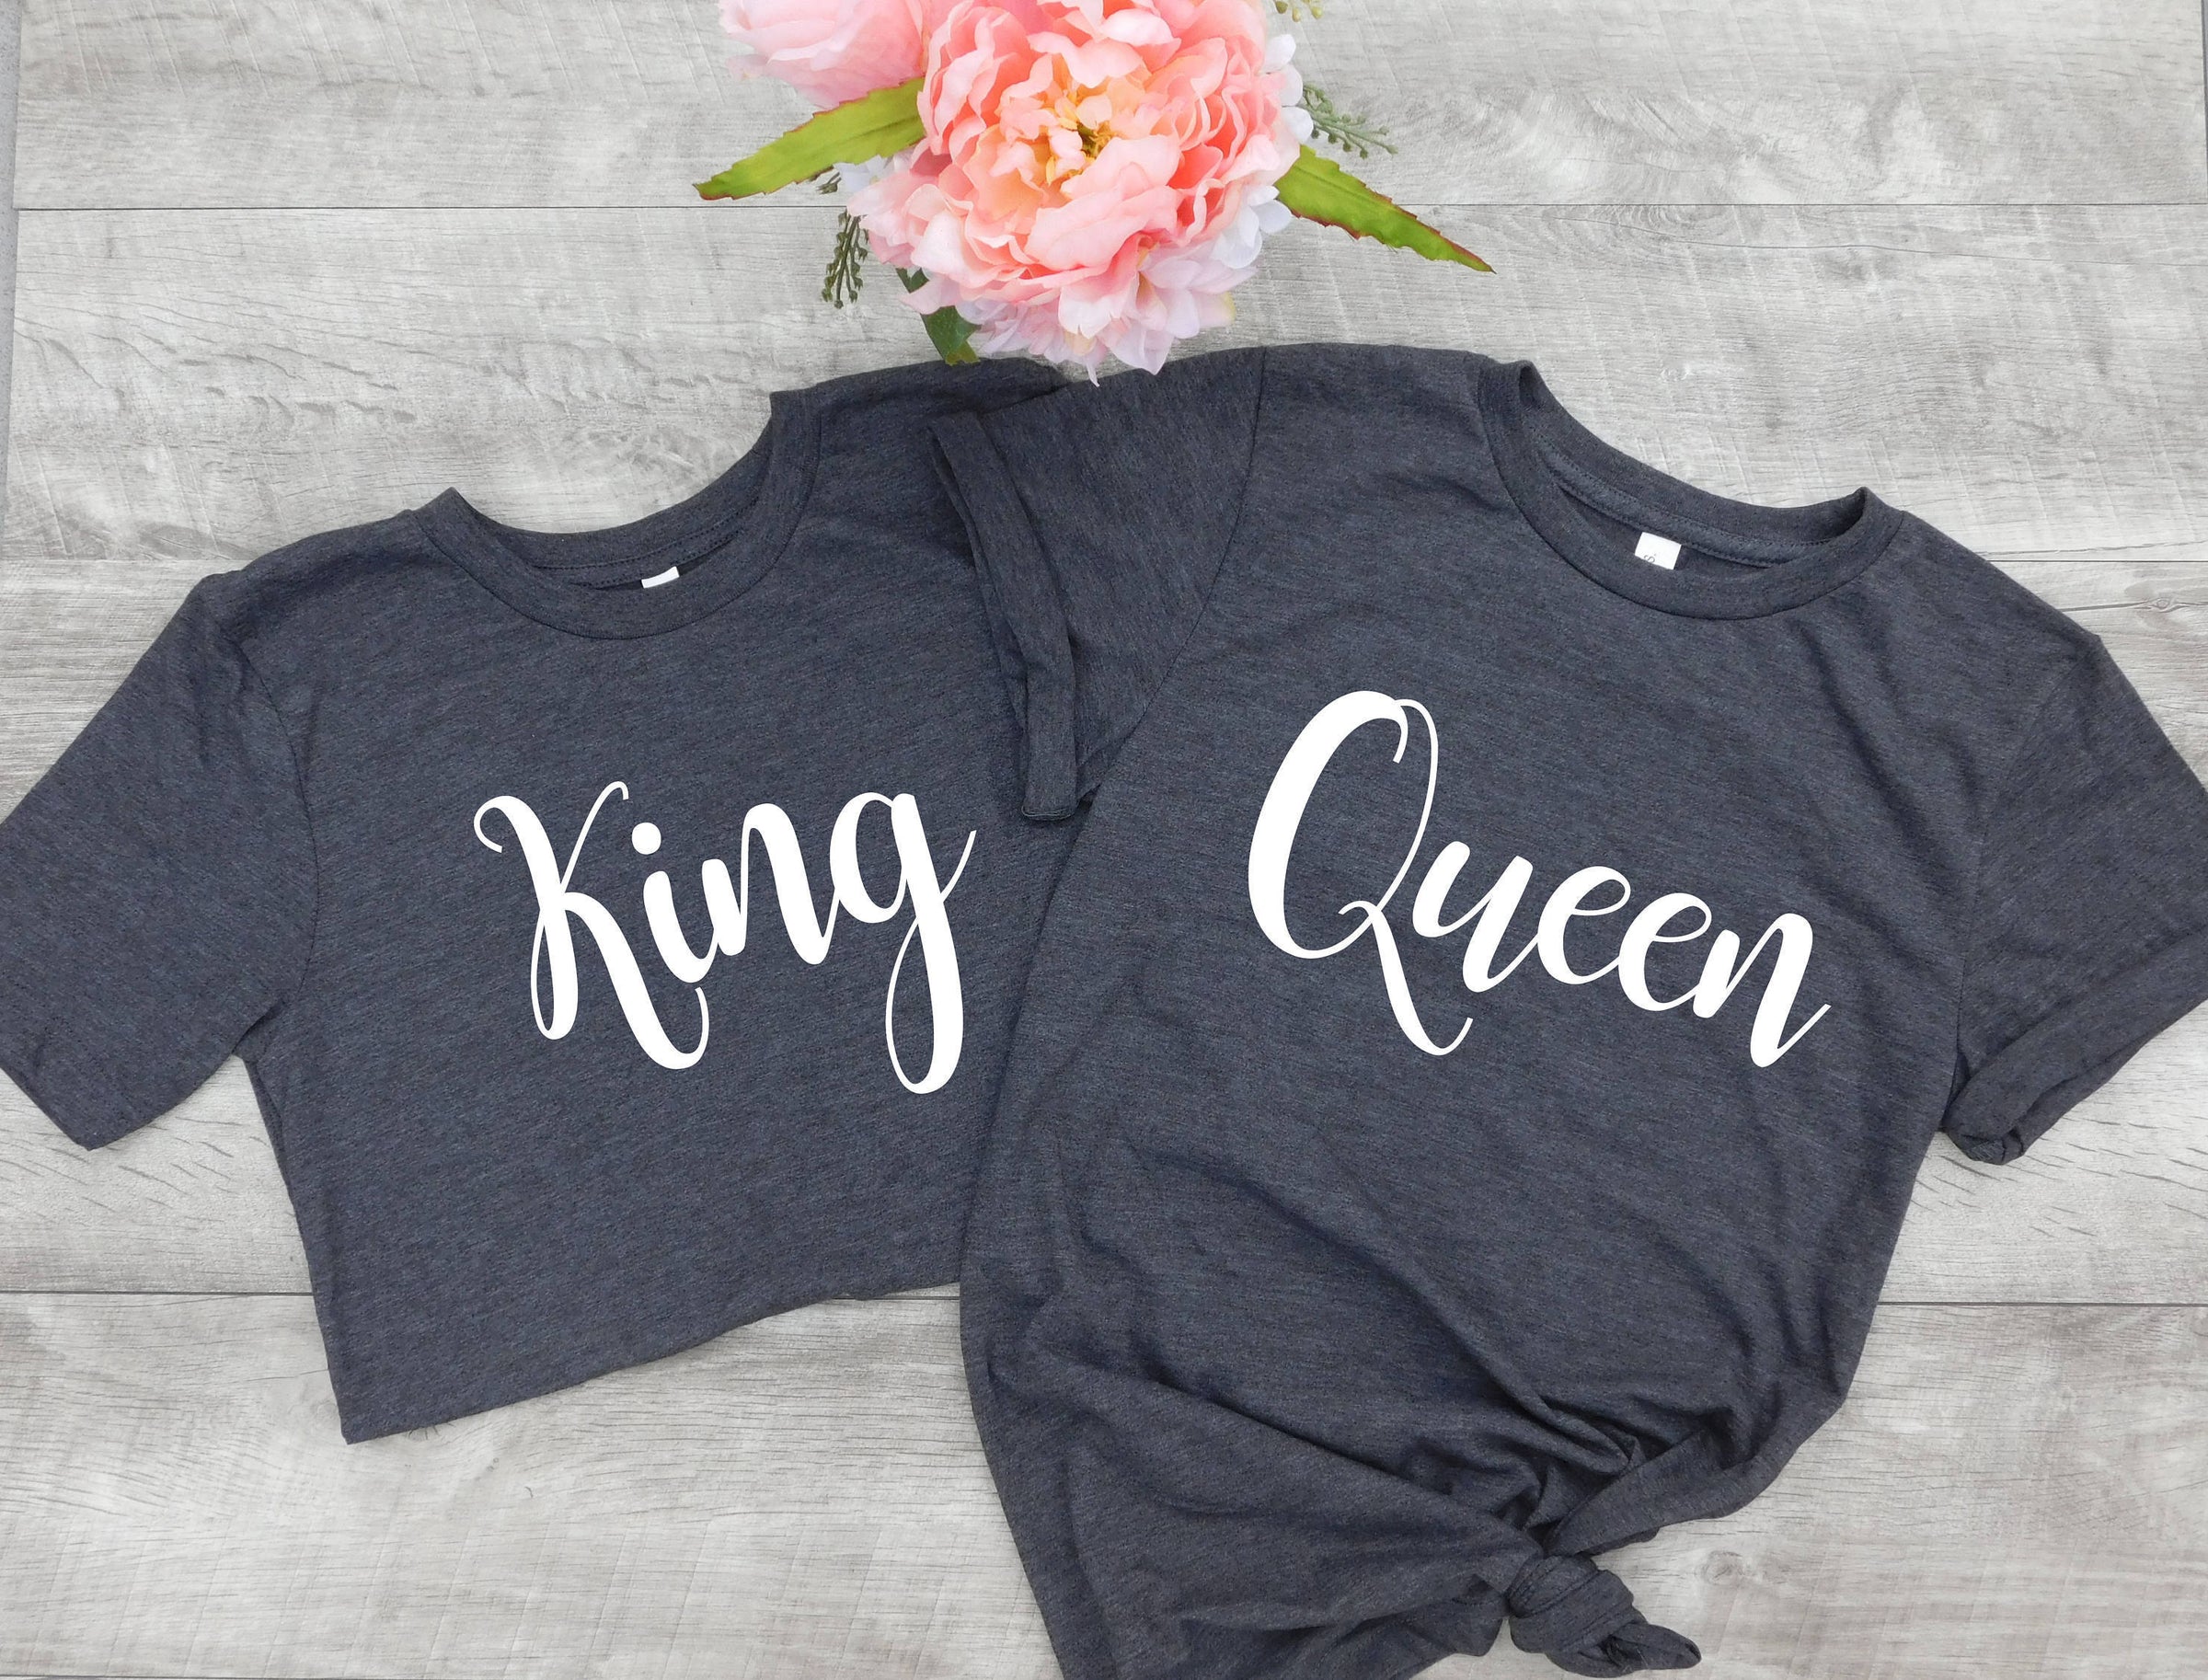 King Queen Shirts Hubby Wifey Shirts Honeymoon Shirts Couples